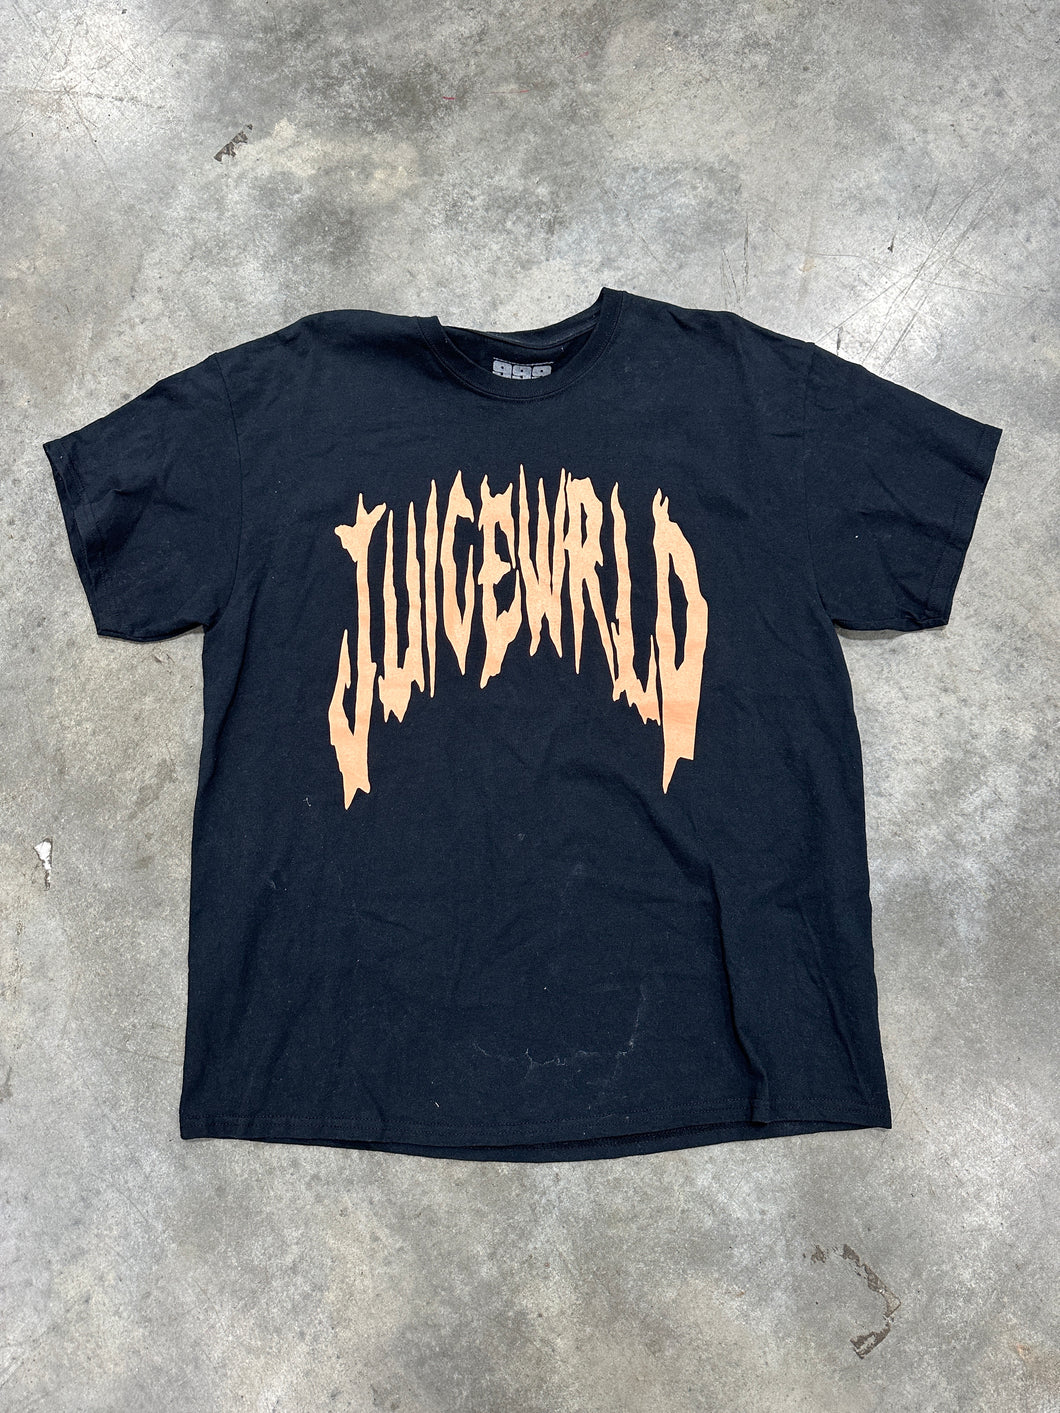 Juice World T-Shirt Sz XL